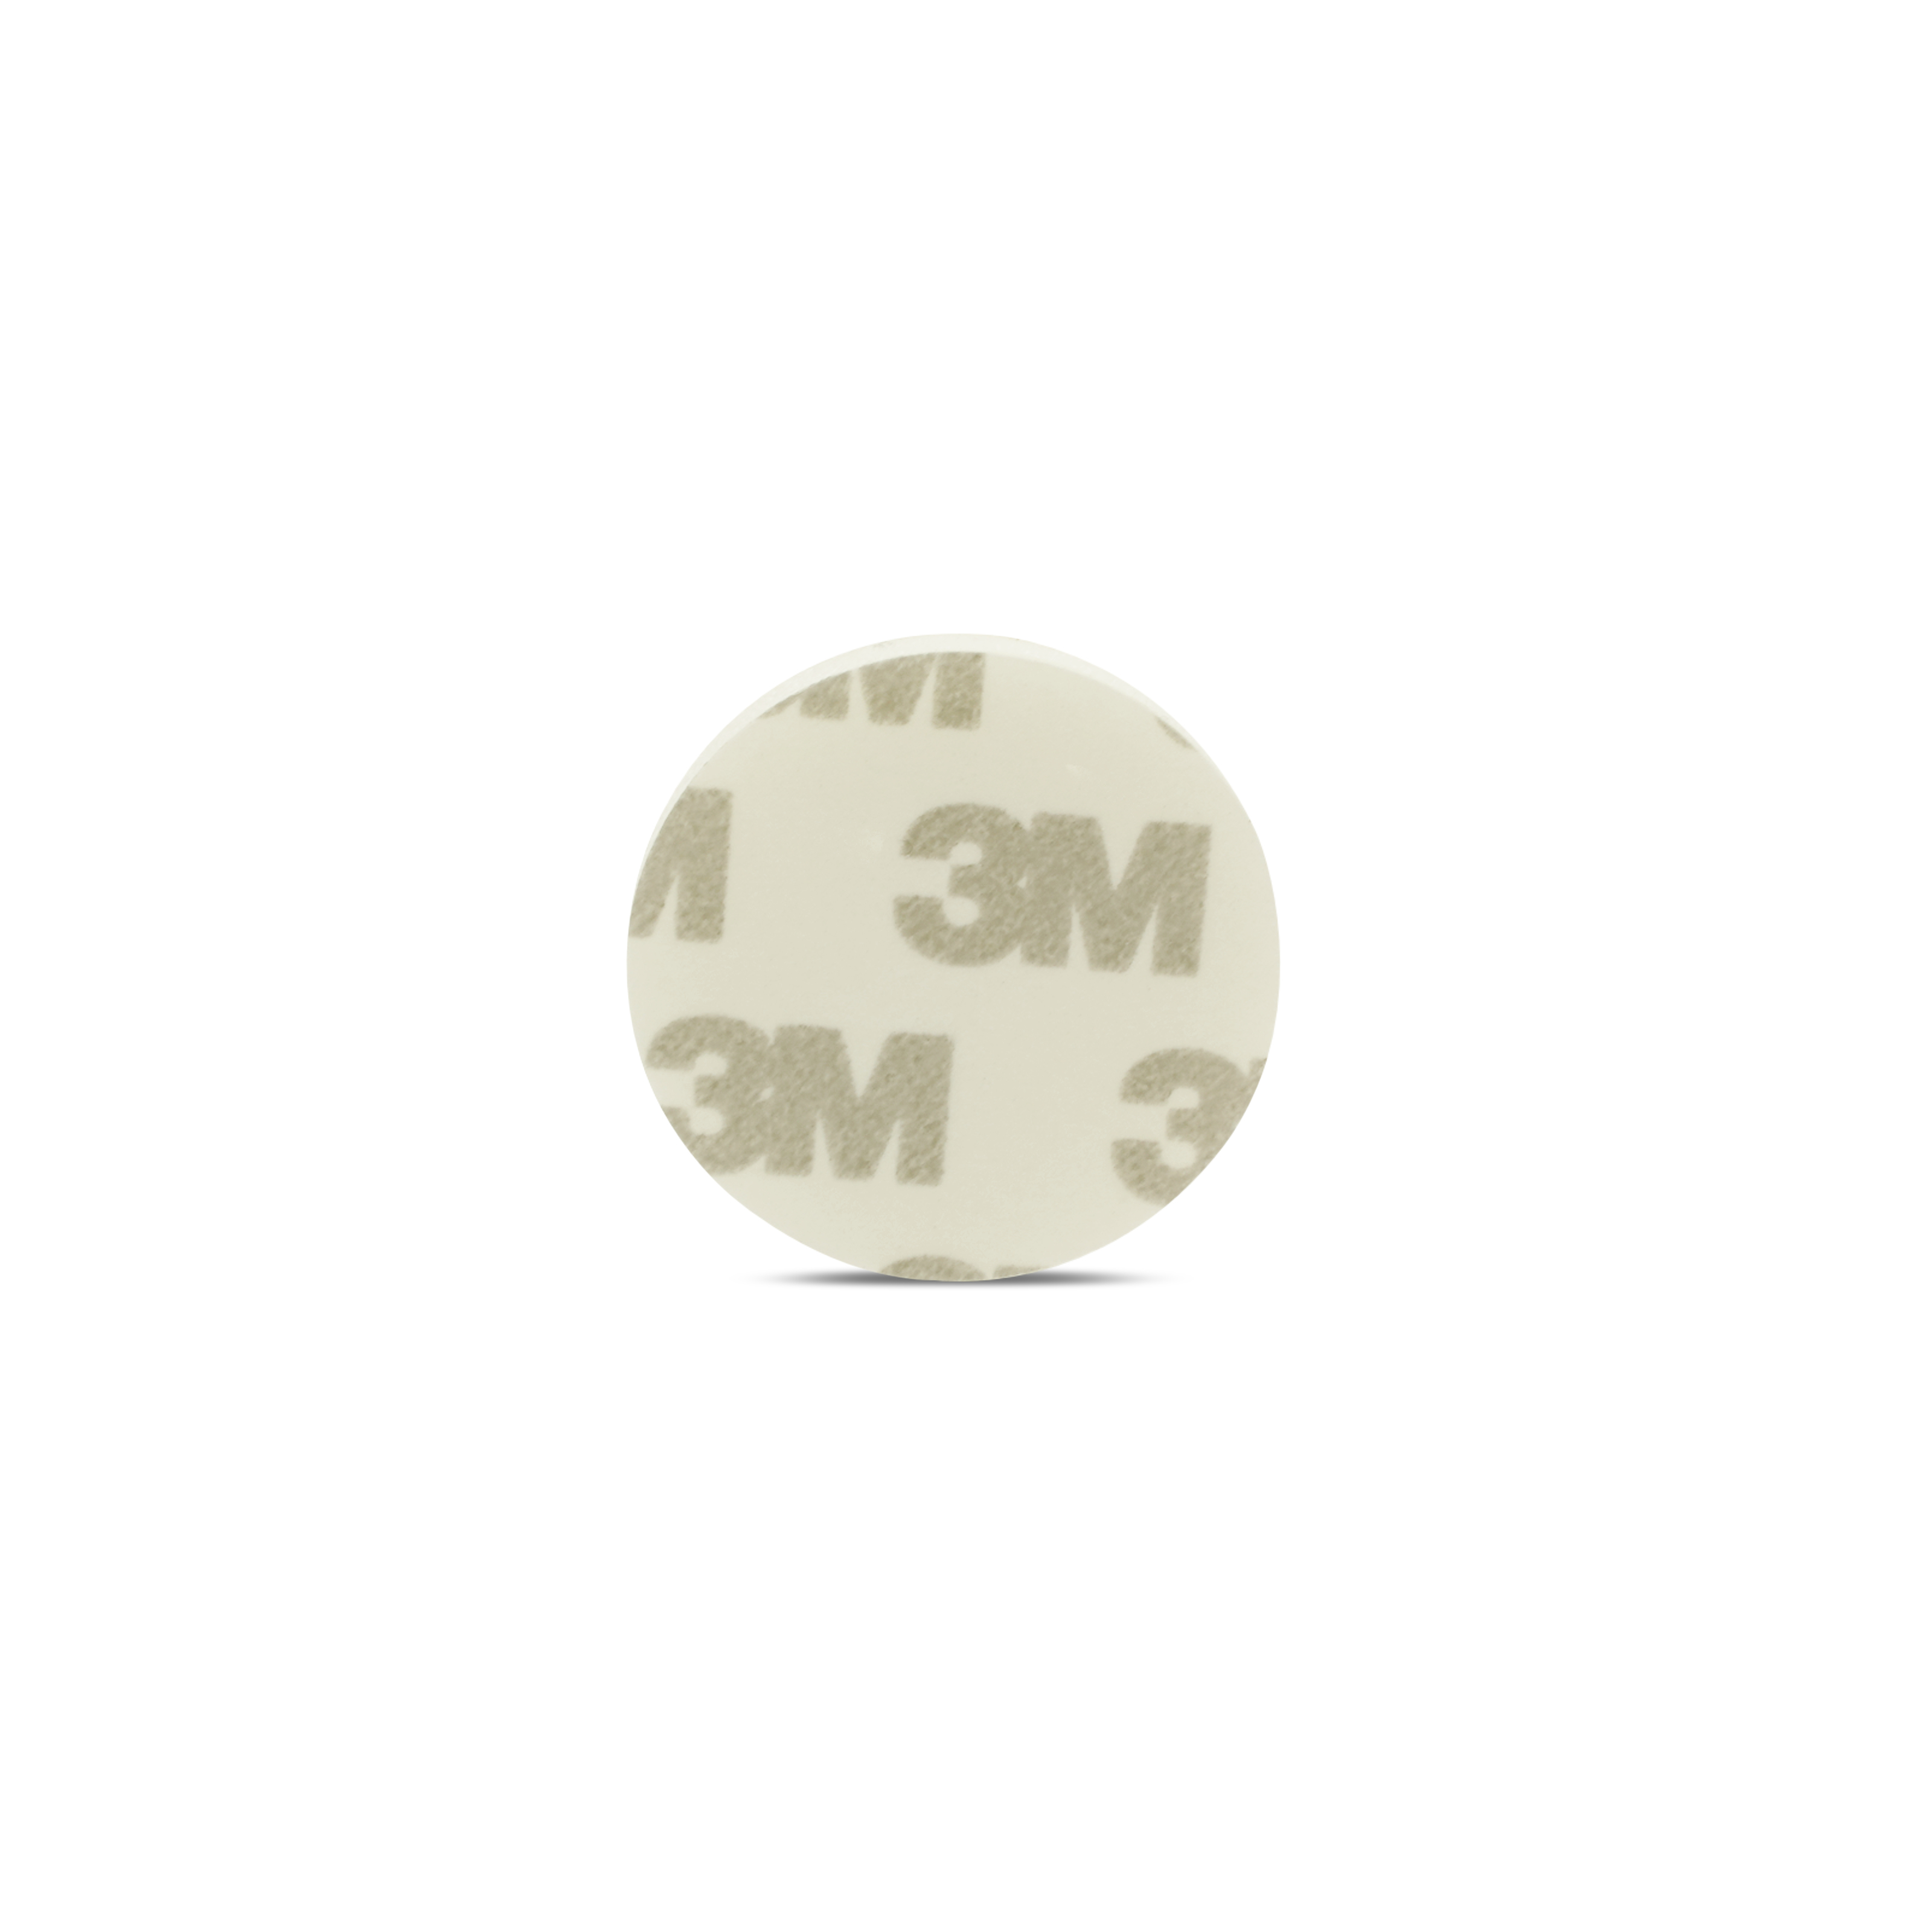 NFC Sticker PVC - 30 mm - NTAG213 - 180 Byte - weiß - mit Schaumstoff